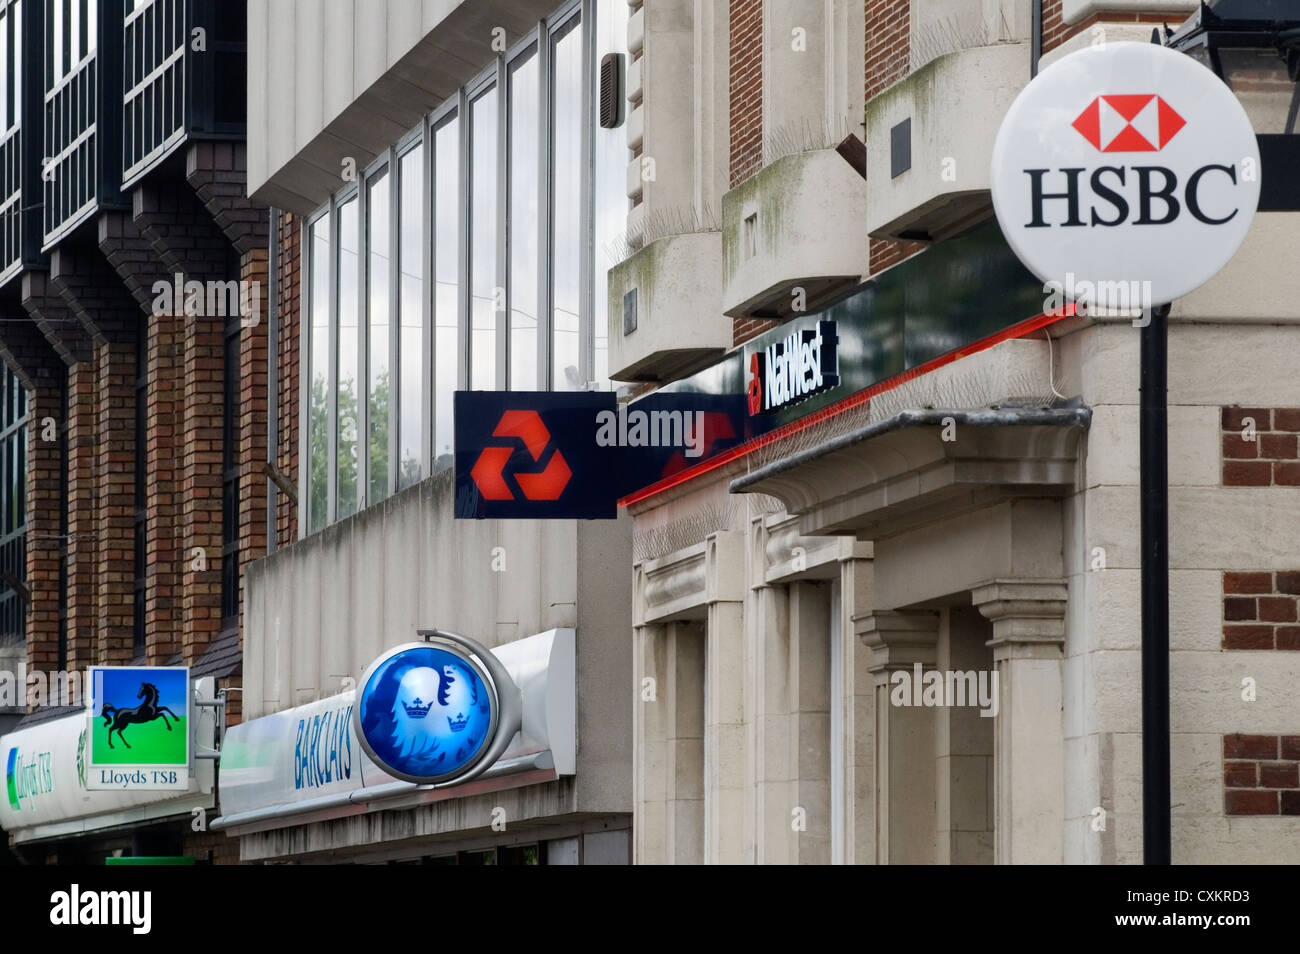 High Street Banks unterschreibt Heimatbezirke UK 2007. 2000er Jahre, als es noch Banken in einer lokalen High Street gab. HSBC, Nat West, National Westminster Bank, Barclays, Lloyds, TSB und einen Cashpoint HOMER SYKES Stockfoto